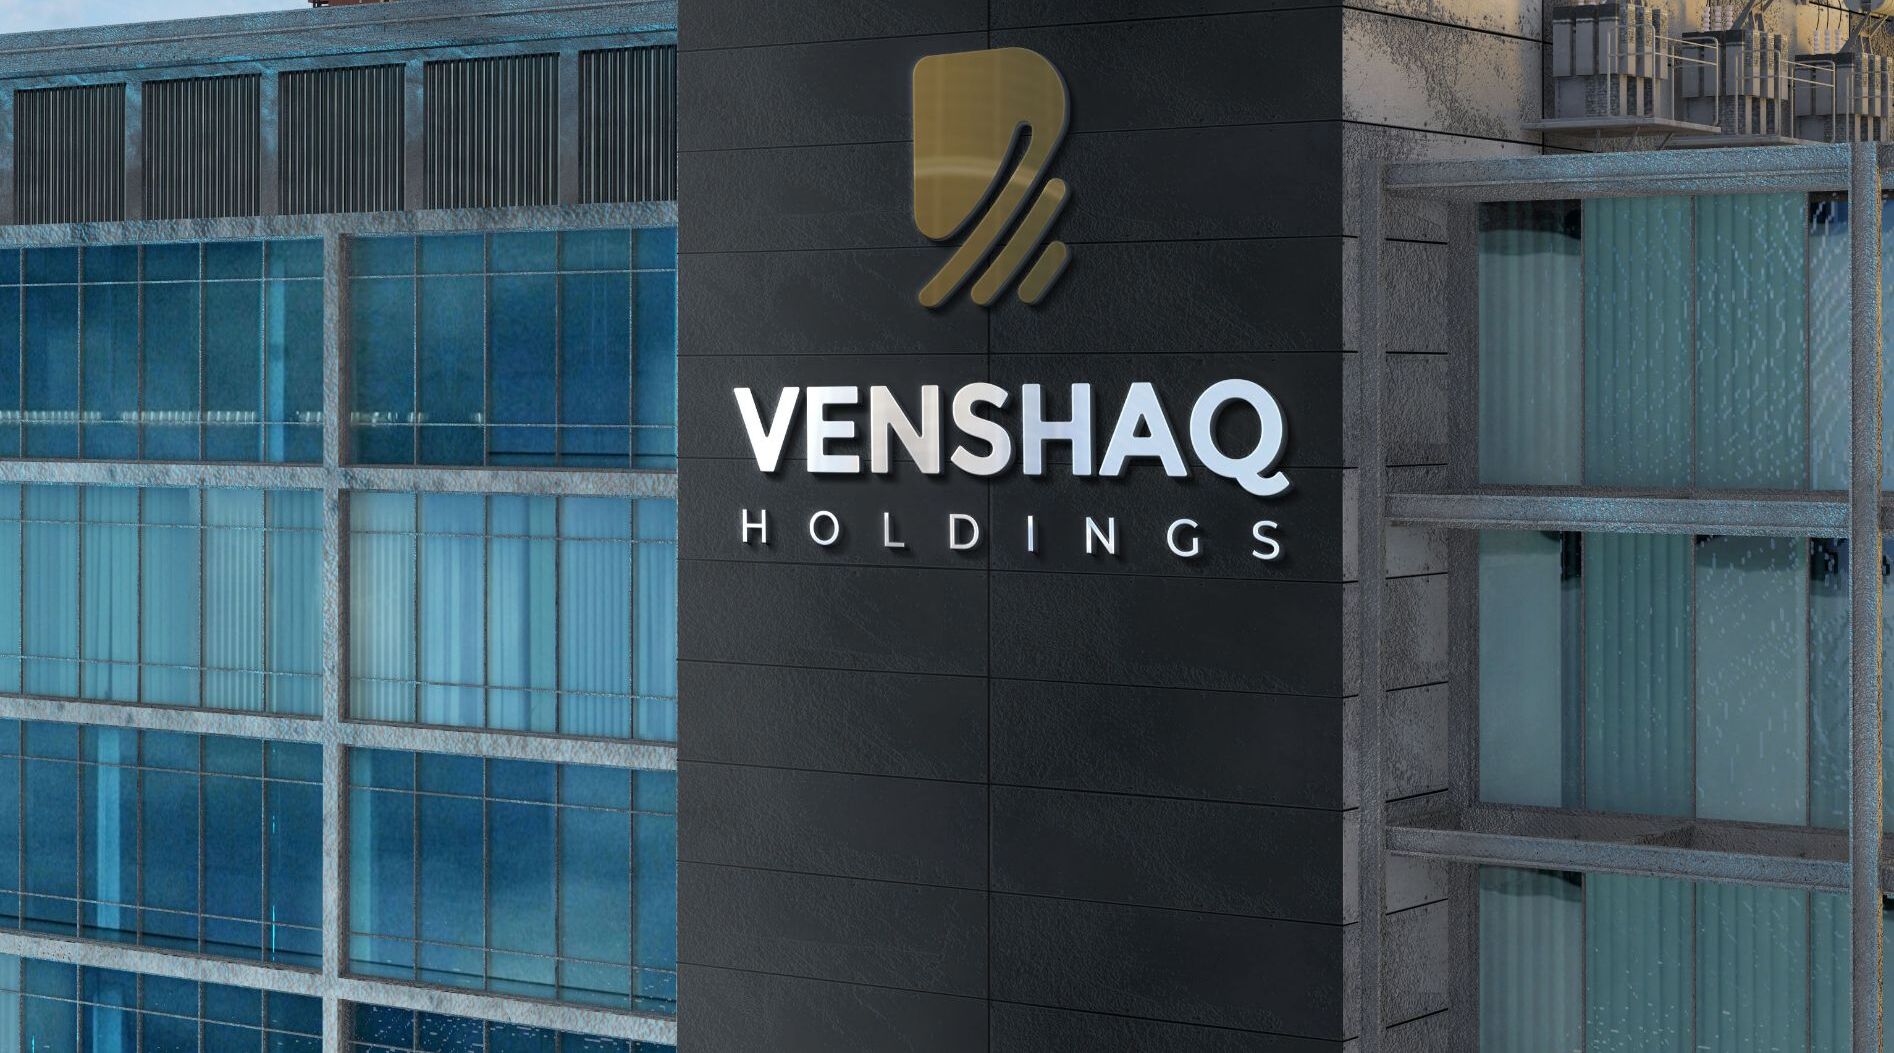 Venshaq Holdings Limited